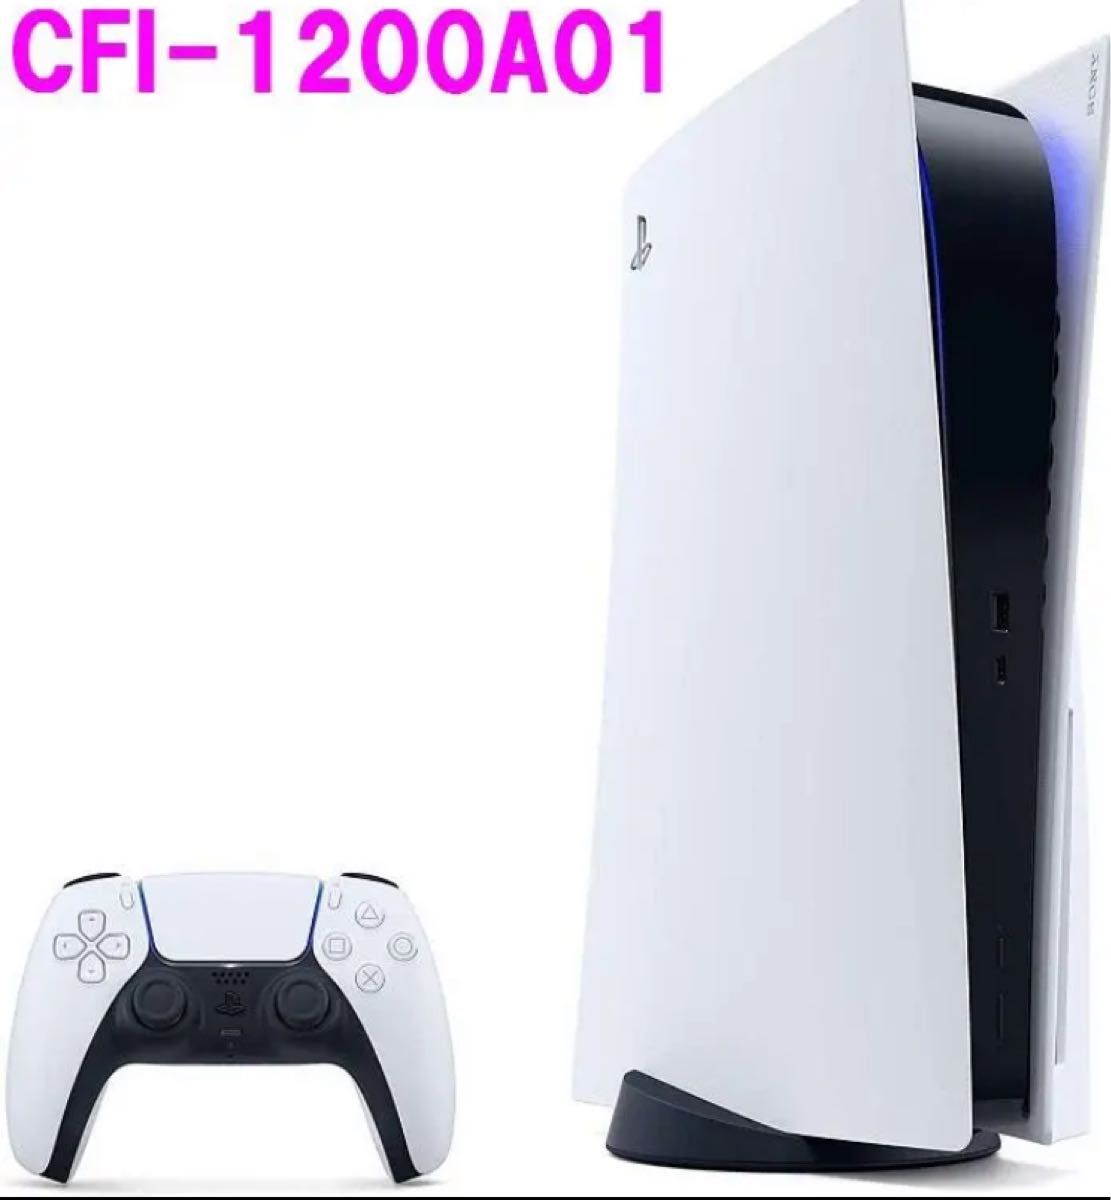 新品】 新型 PlayStation 5 (CFI-1200A01) 通常版 - fundacionatenea.org